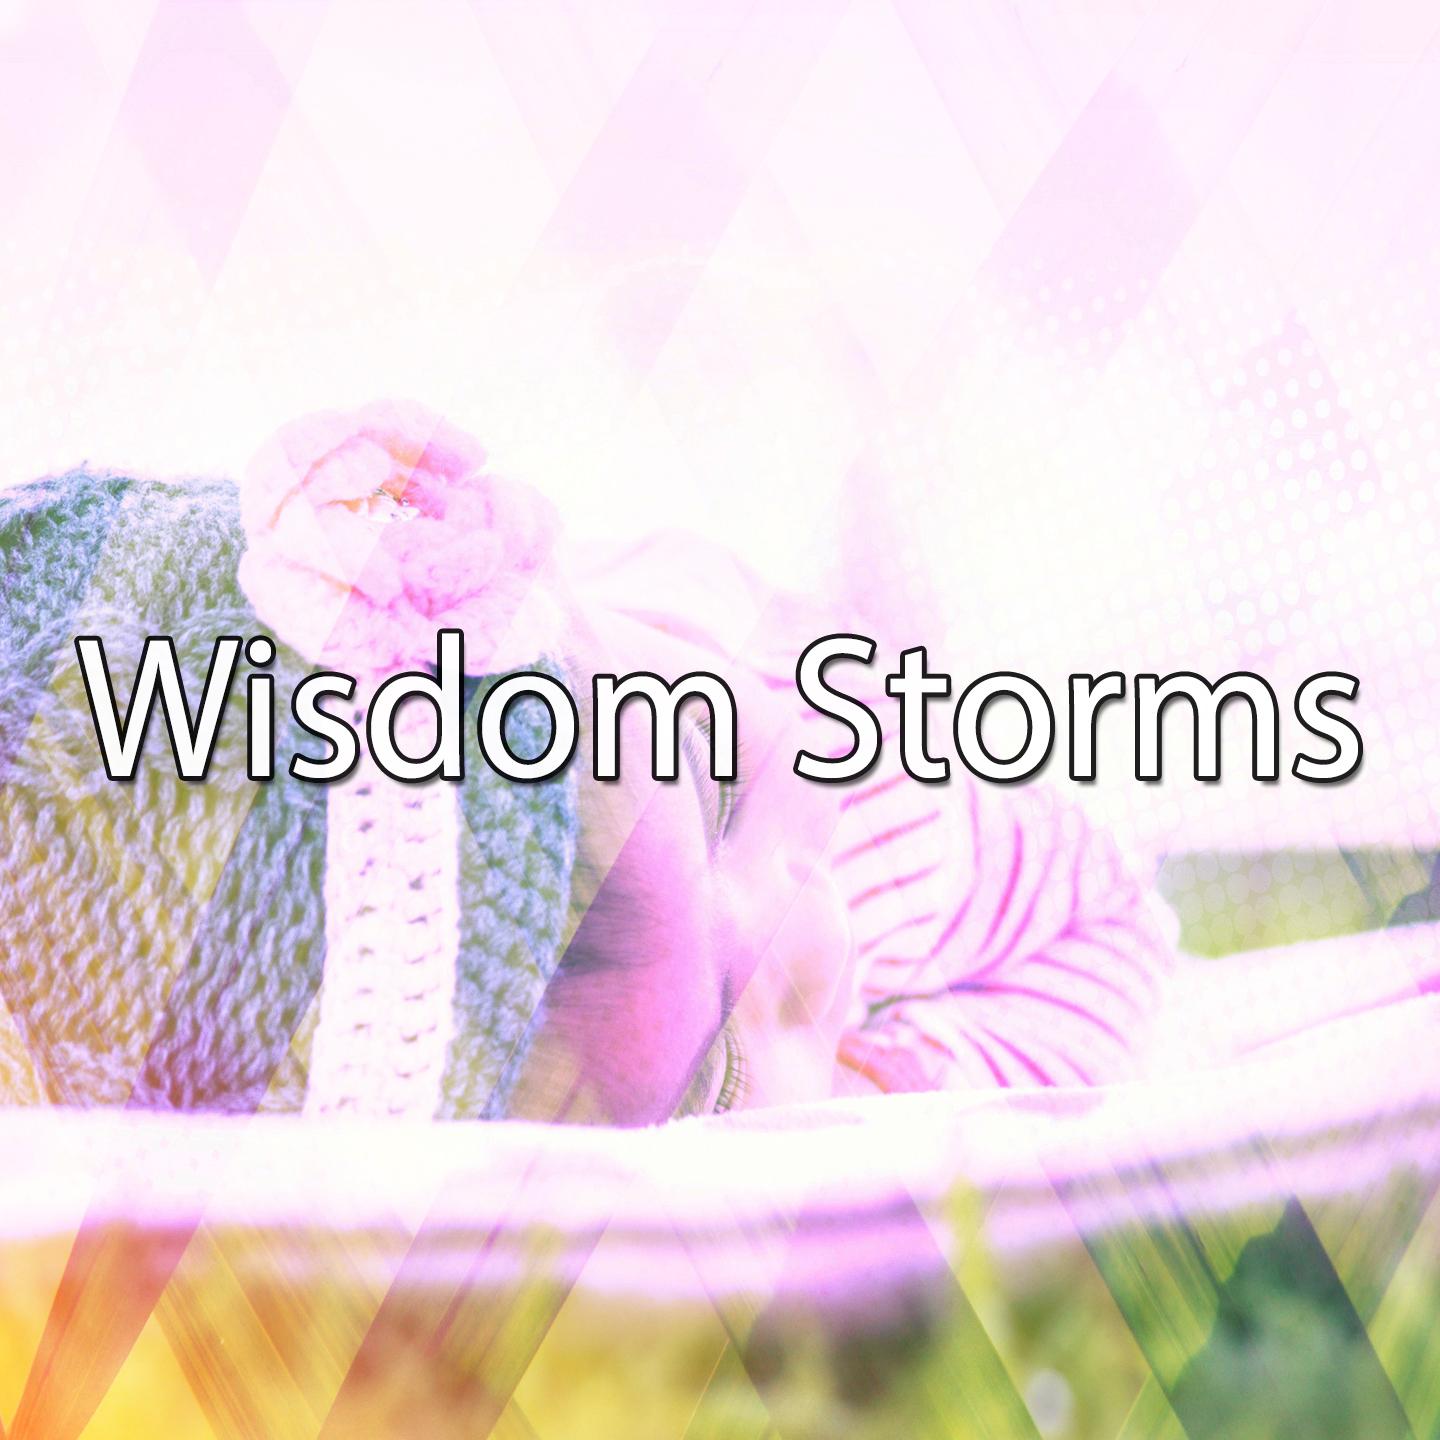 Wisdom Storms